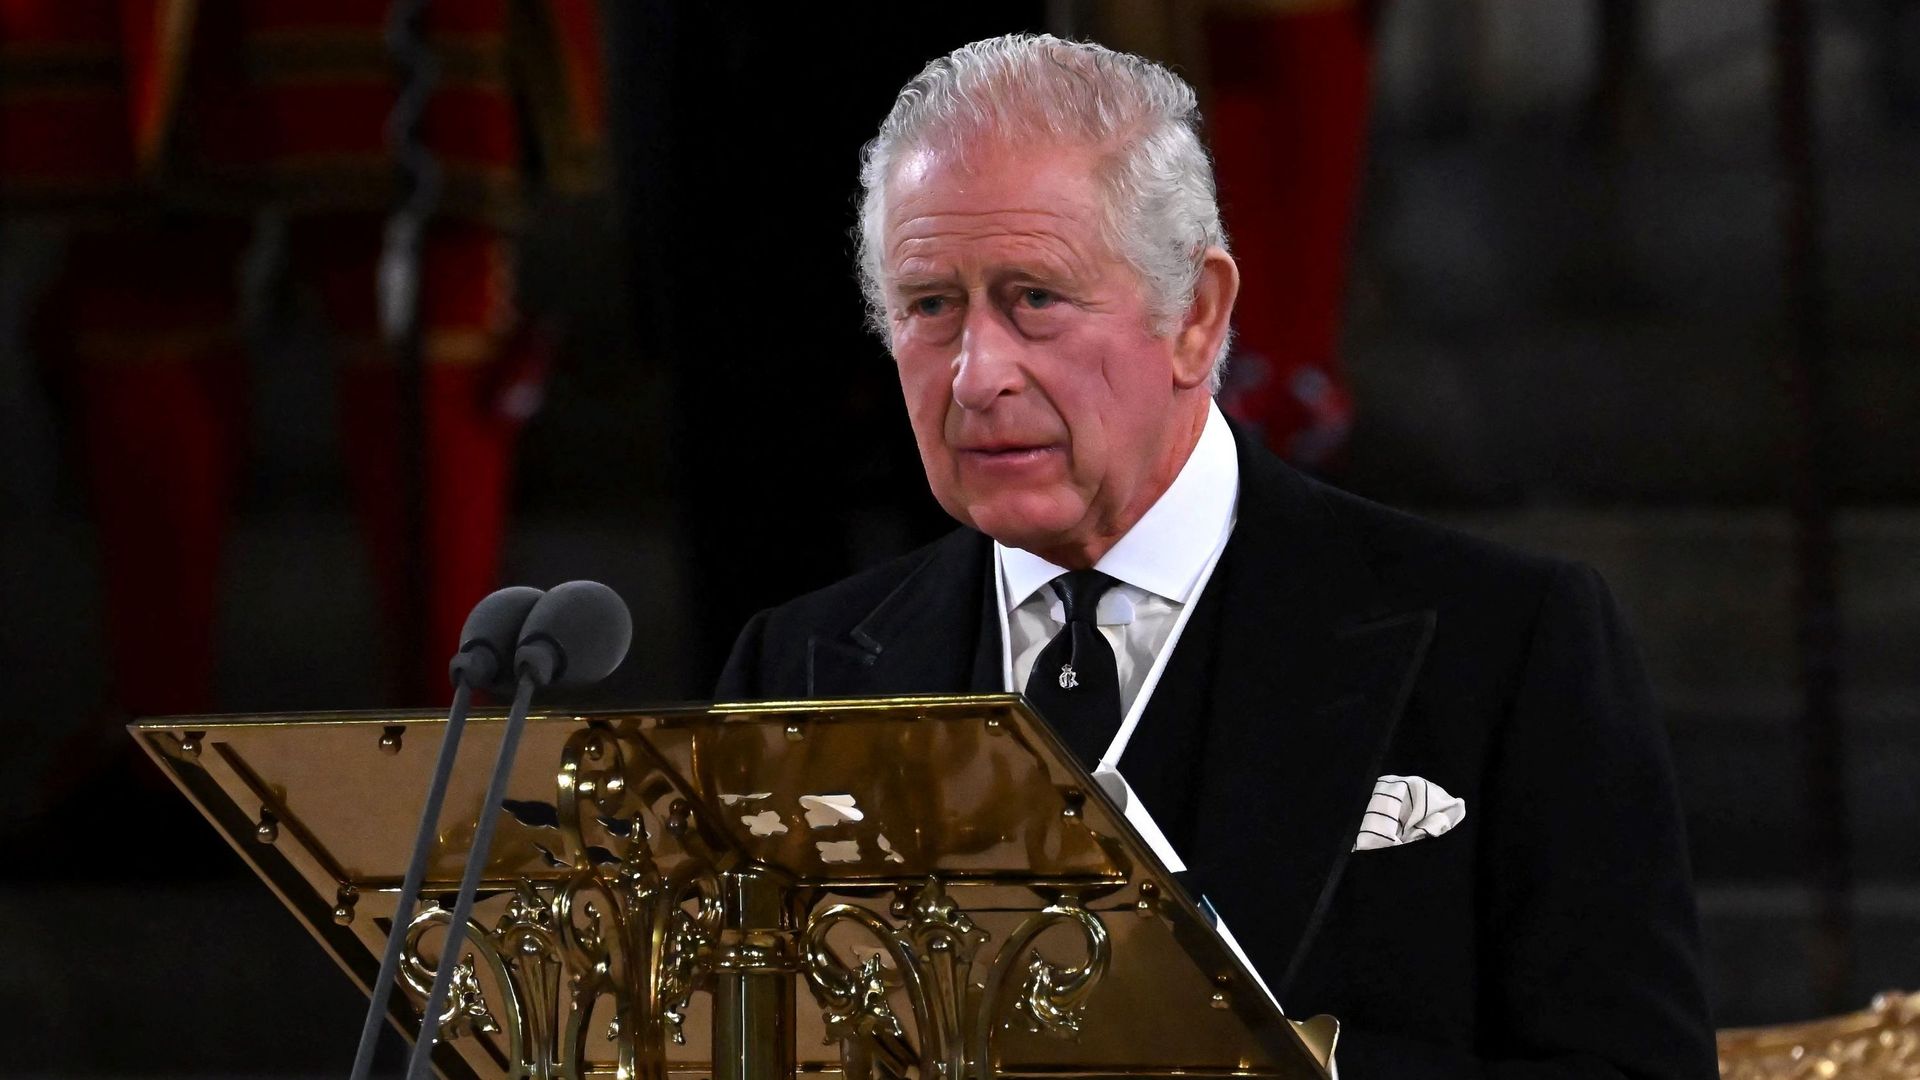 Le roi Charles III prononce un discours devant le Parlement britannique, à Westminster, ce lundi 12 septembre 2022.